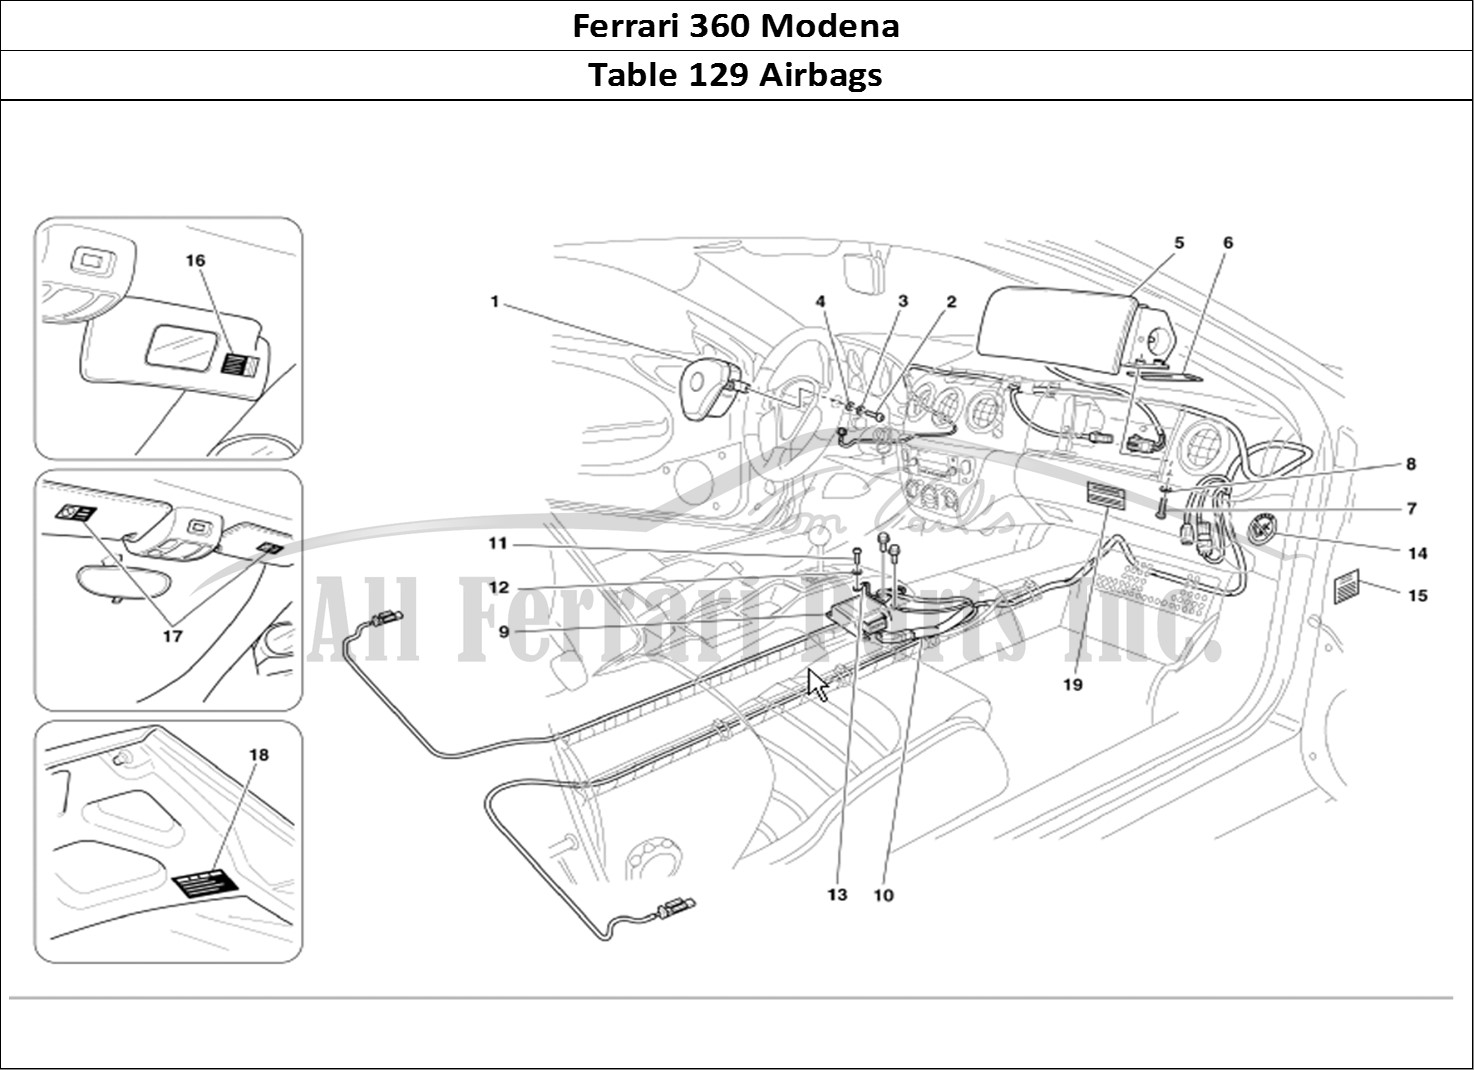 Ferrari Parts Ferrari 360 Modena Page 129 Air-Bags